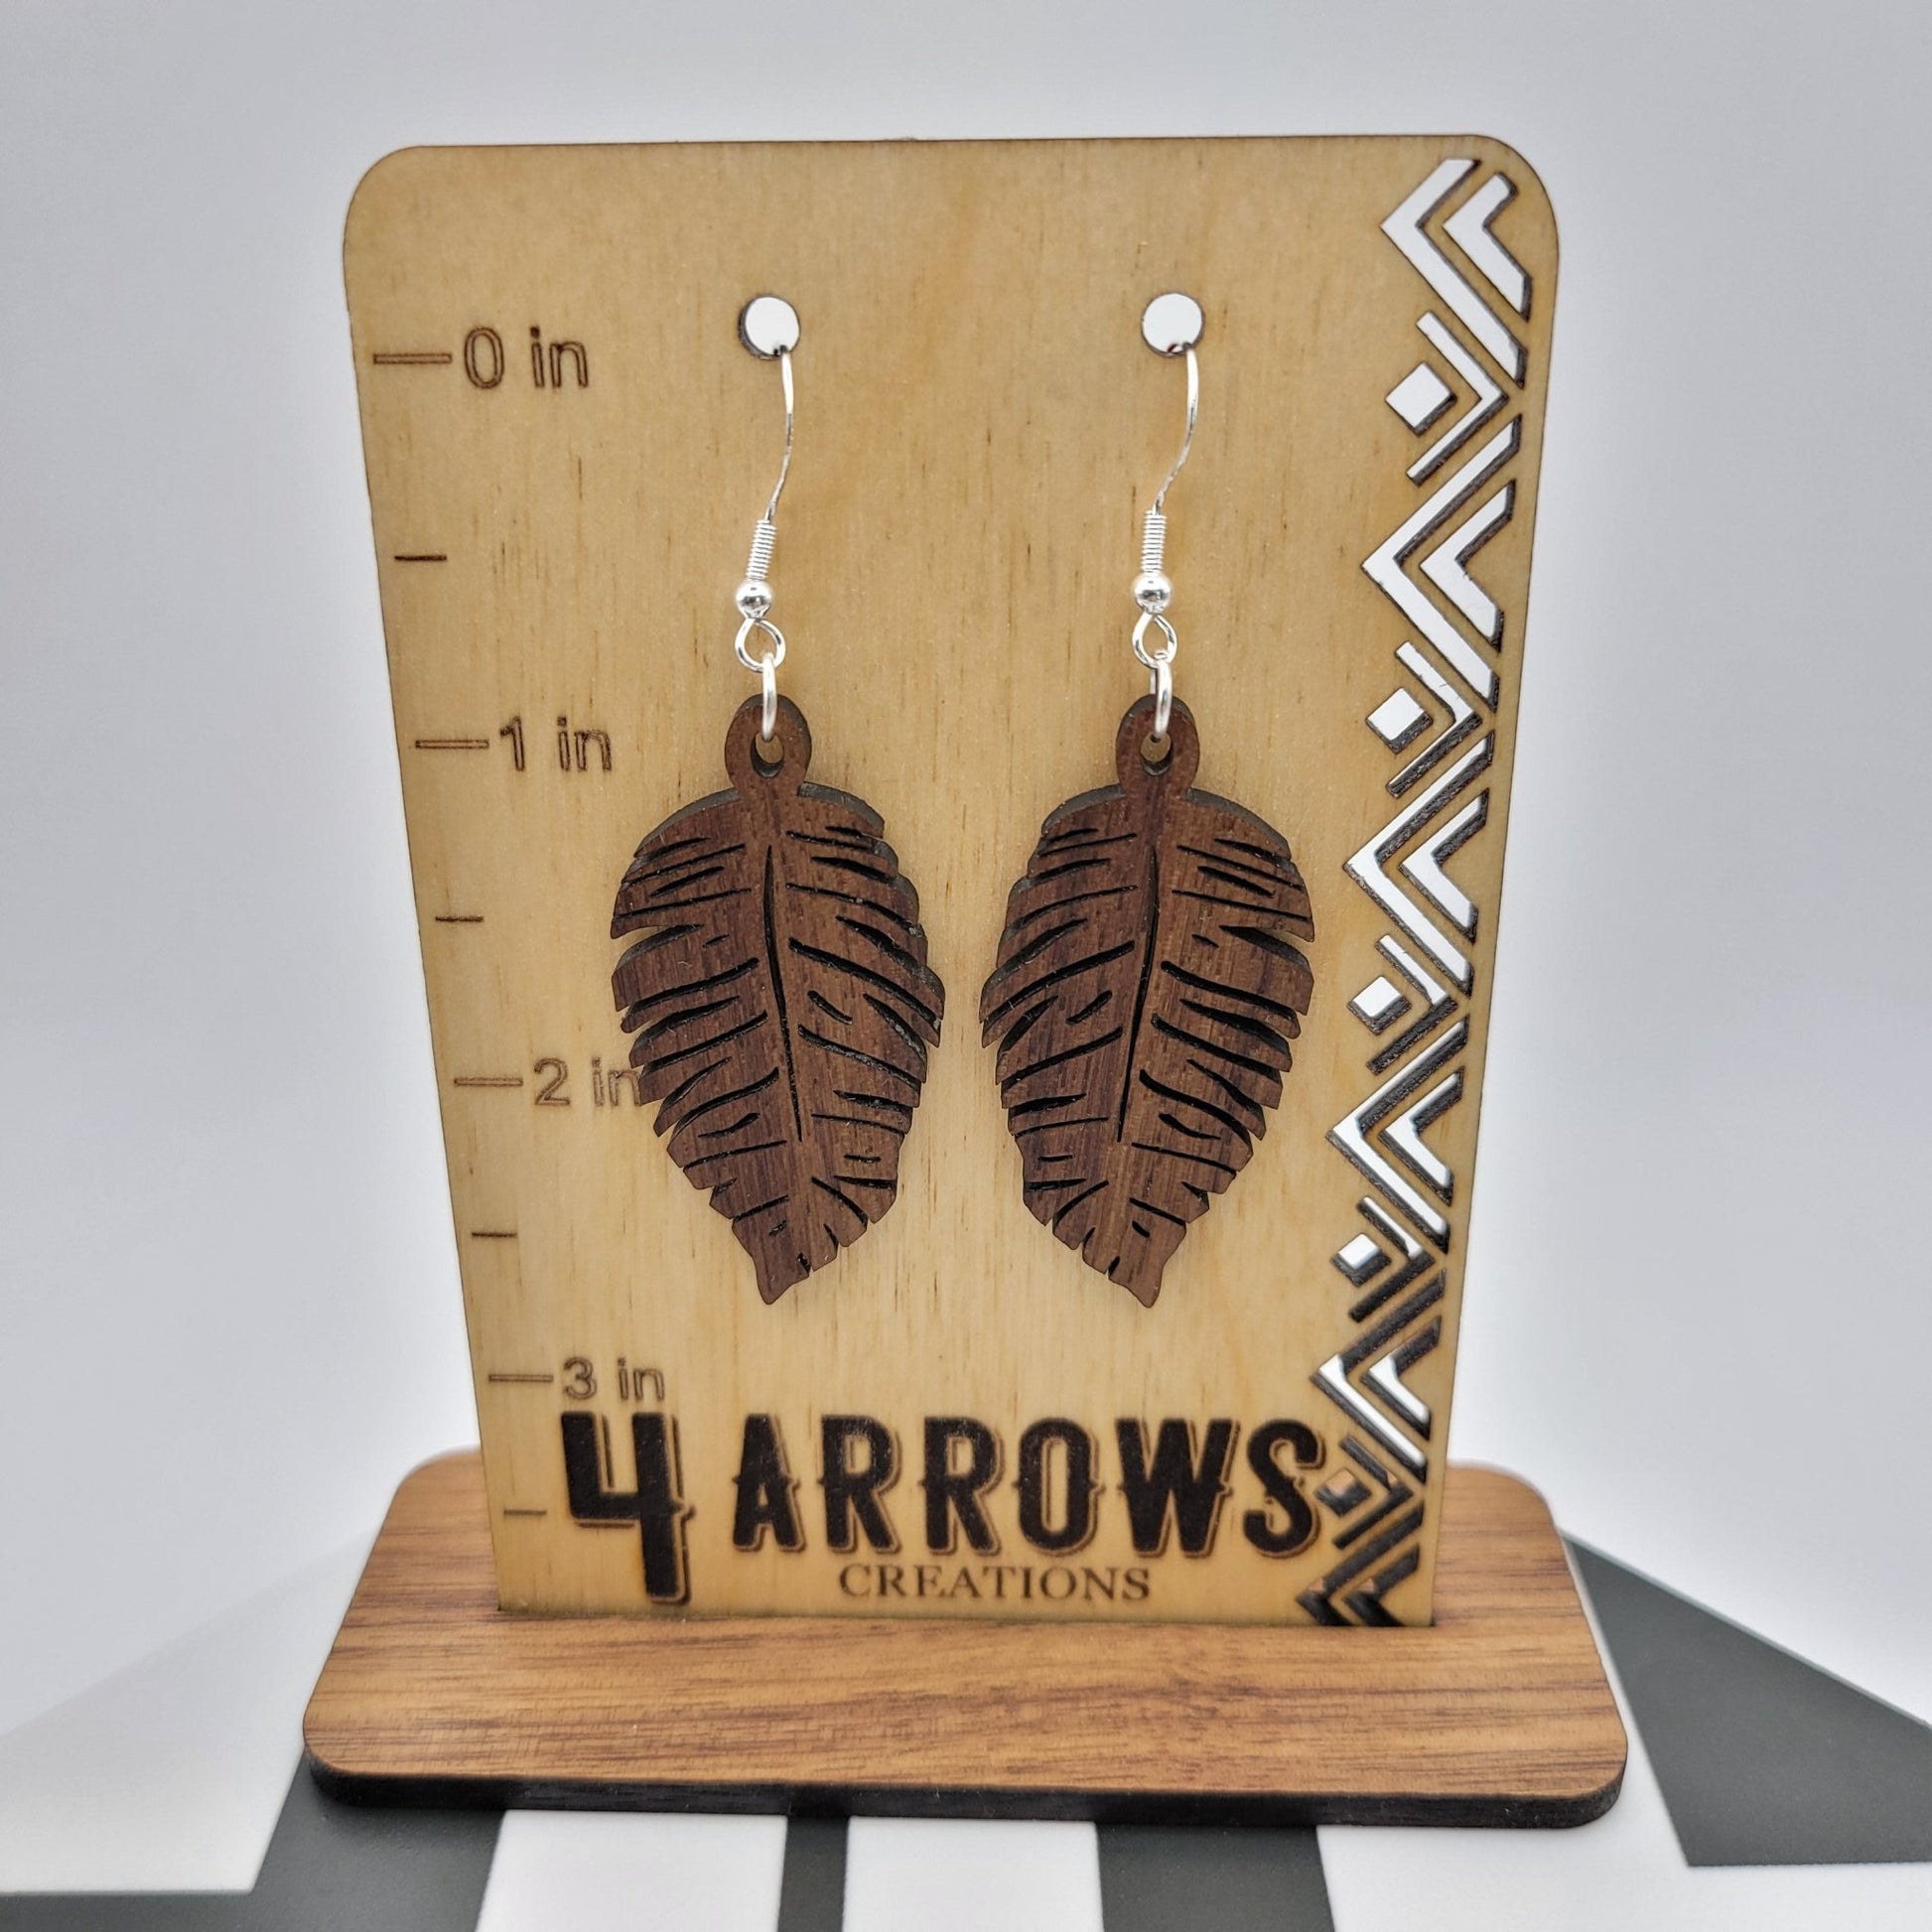 Dalisa Wood Earrings - 4 Arrows Creations